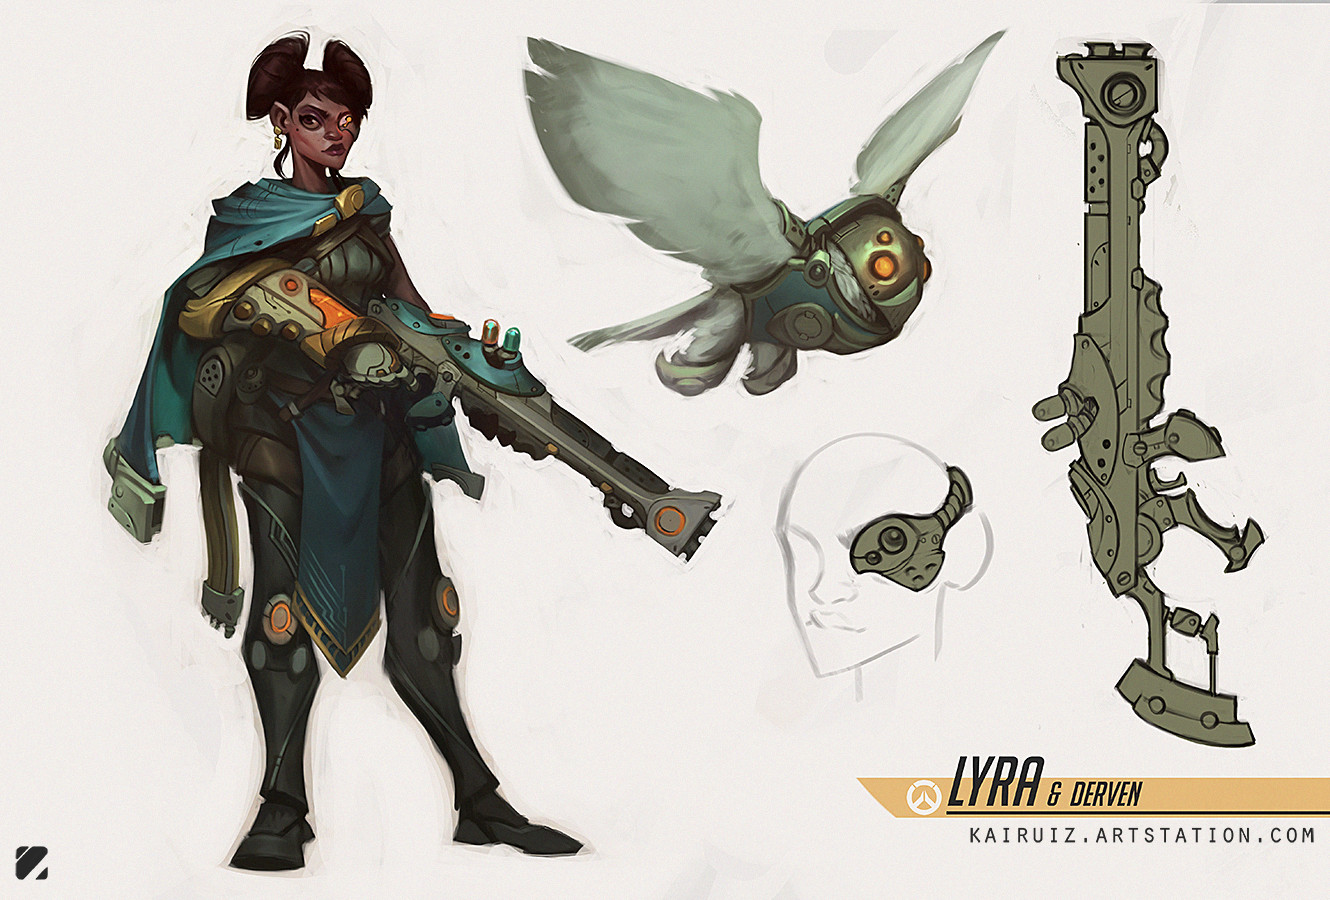 ArtStation - Lyra & Derven - Overwatch fan character concept